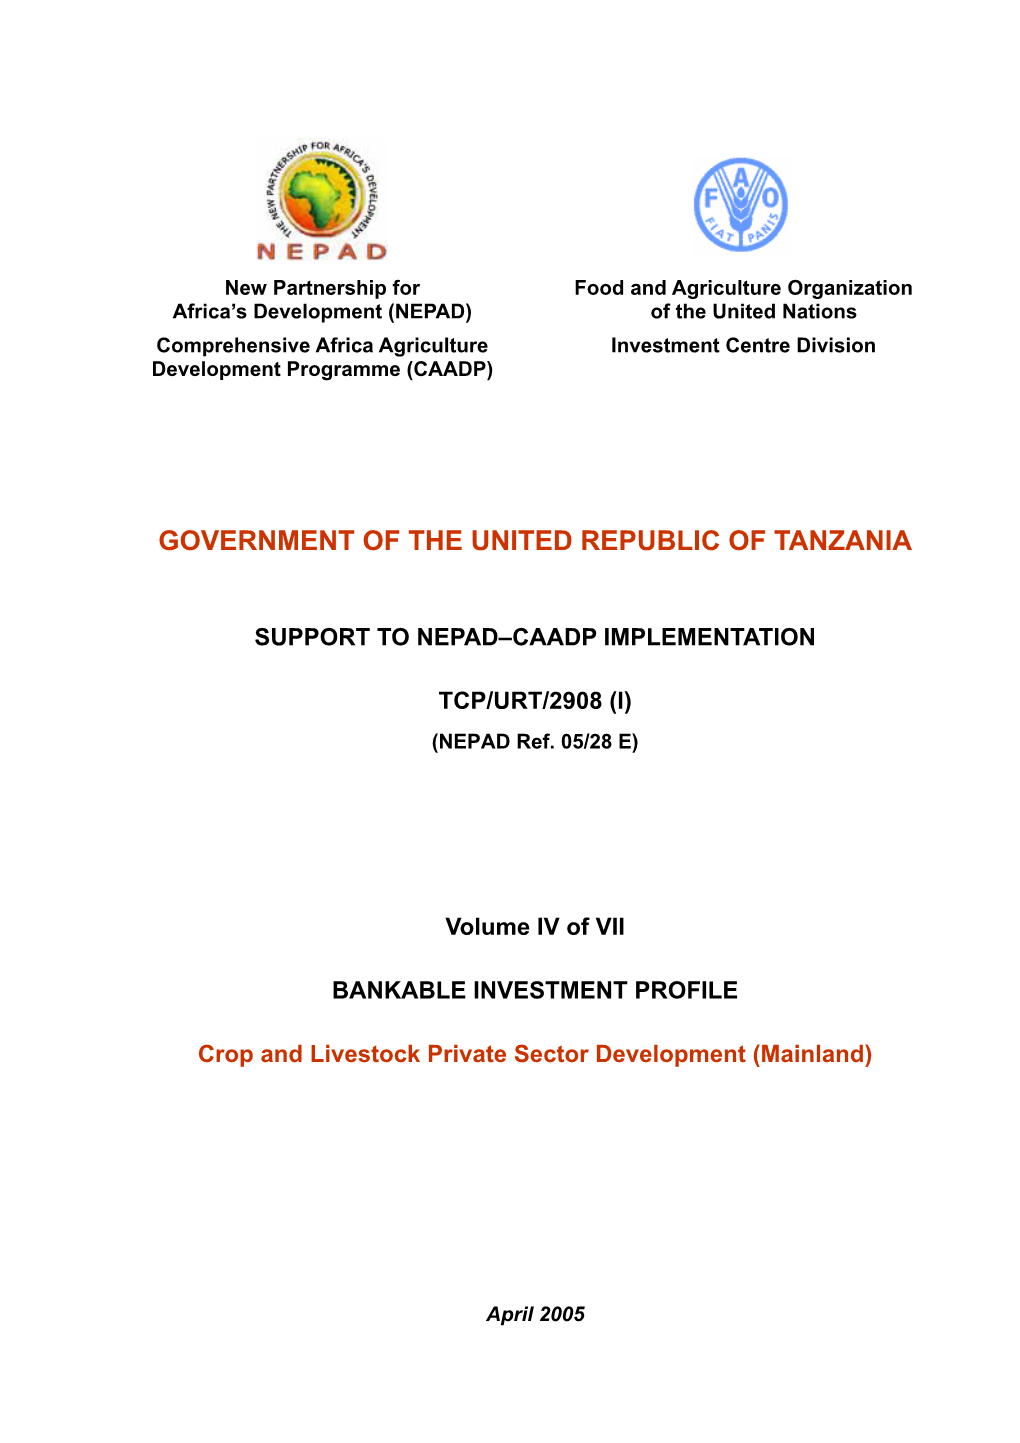 Government of the United Republic of Tanzania